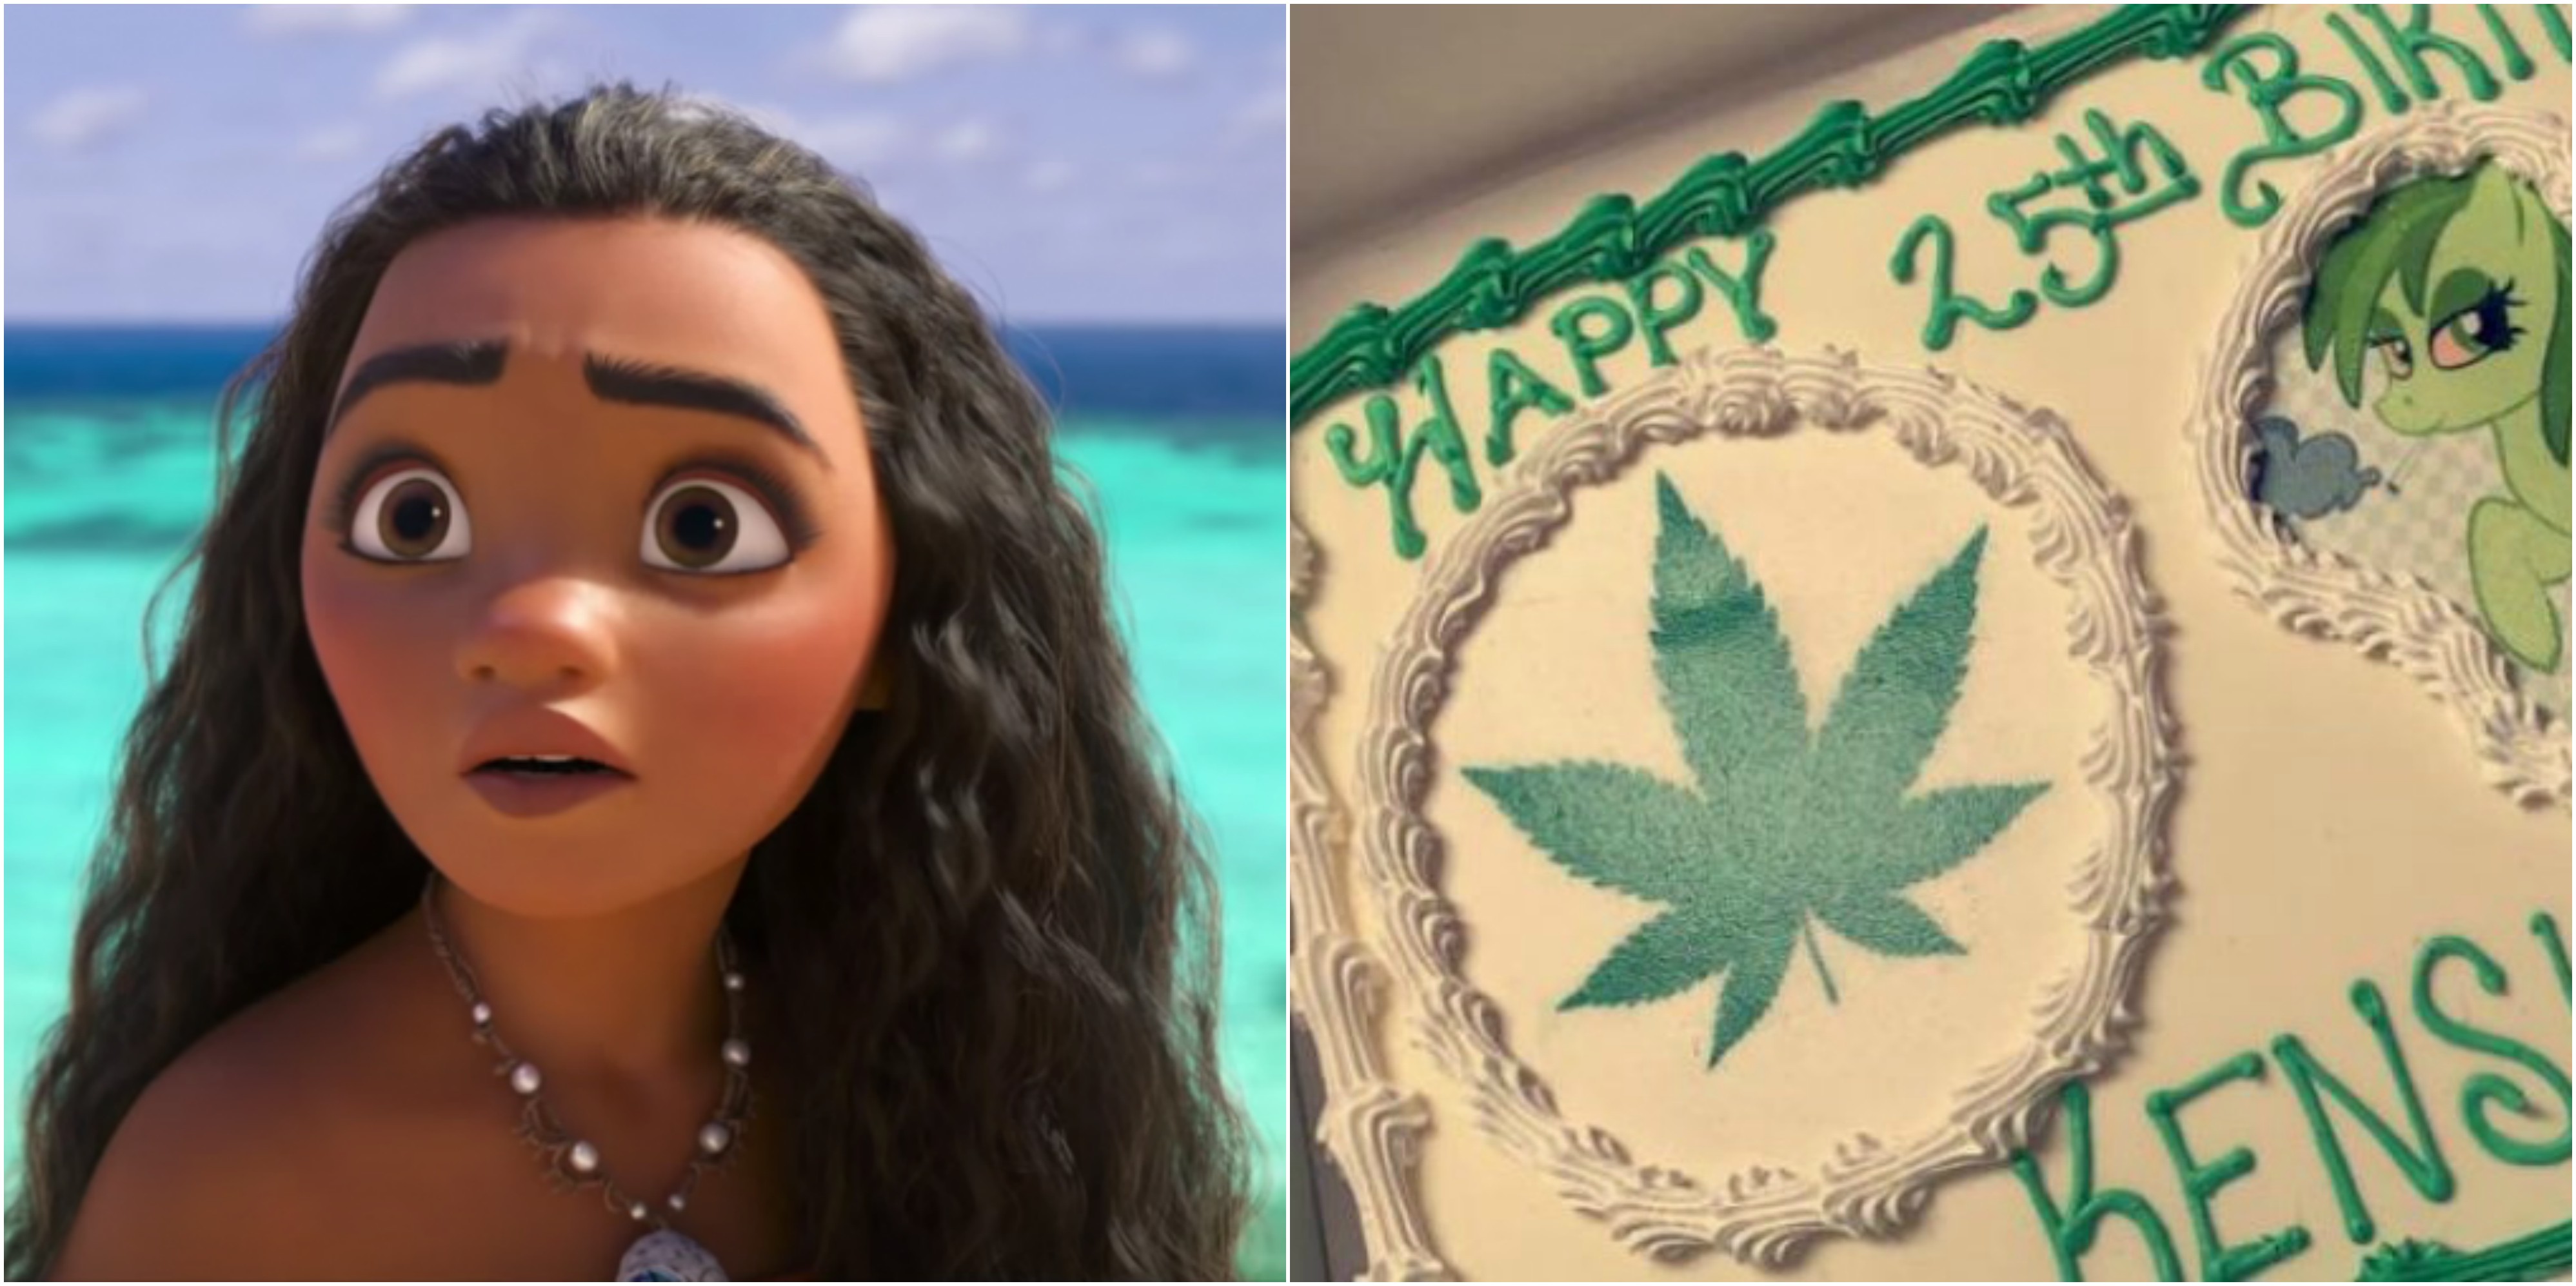 Porositi tortë me “Moana”, por i sollën “Marihuana”